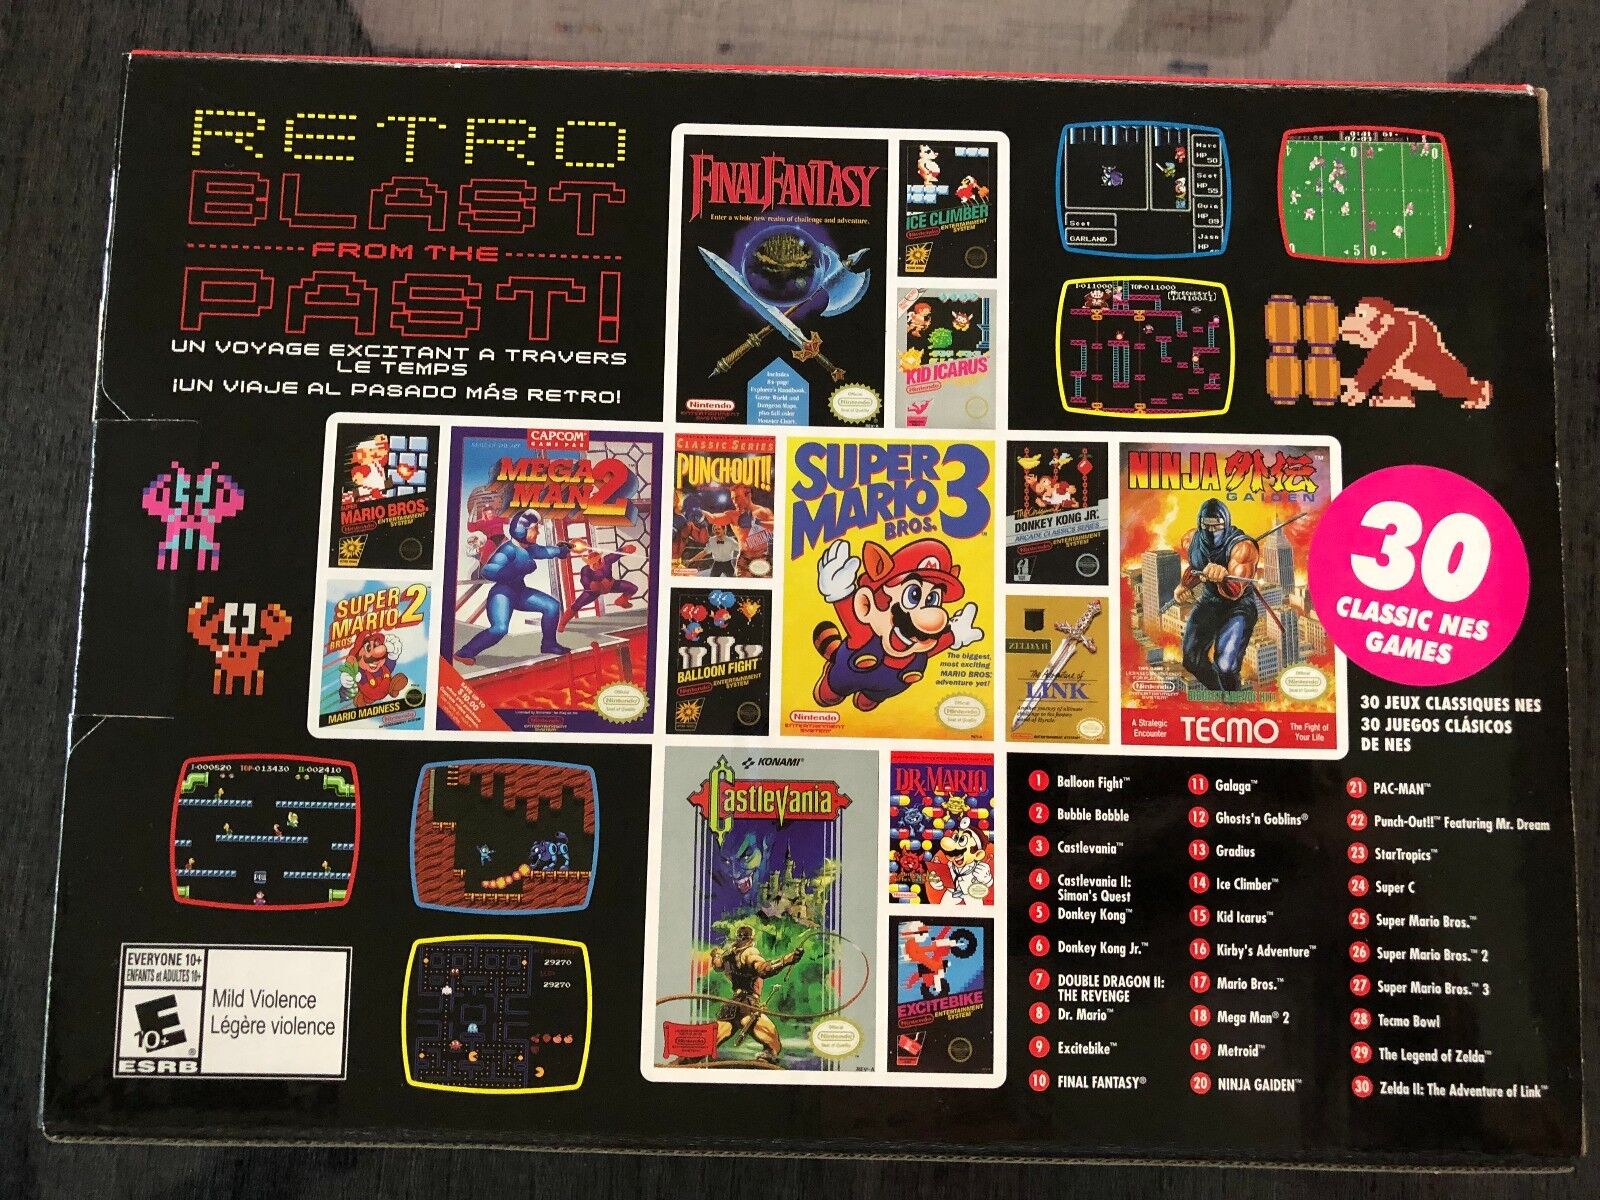 Nintendo Entertainment System: NES Classic Edition 30 Integrierte klassische Spiele